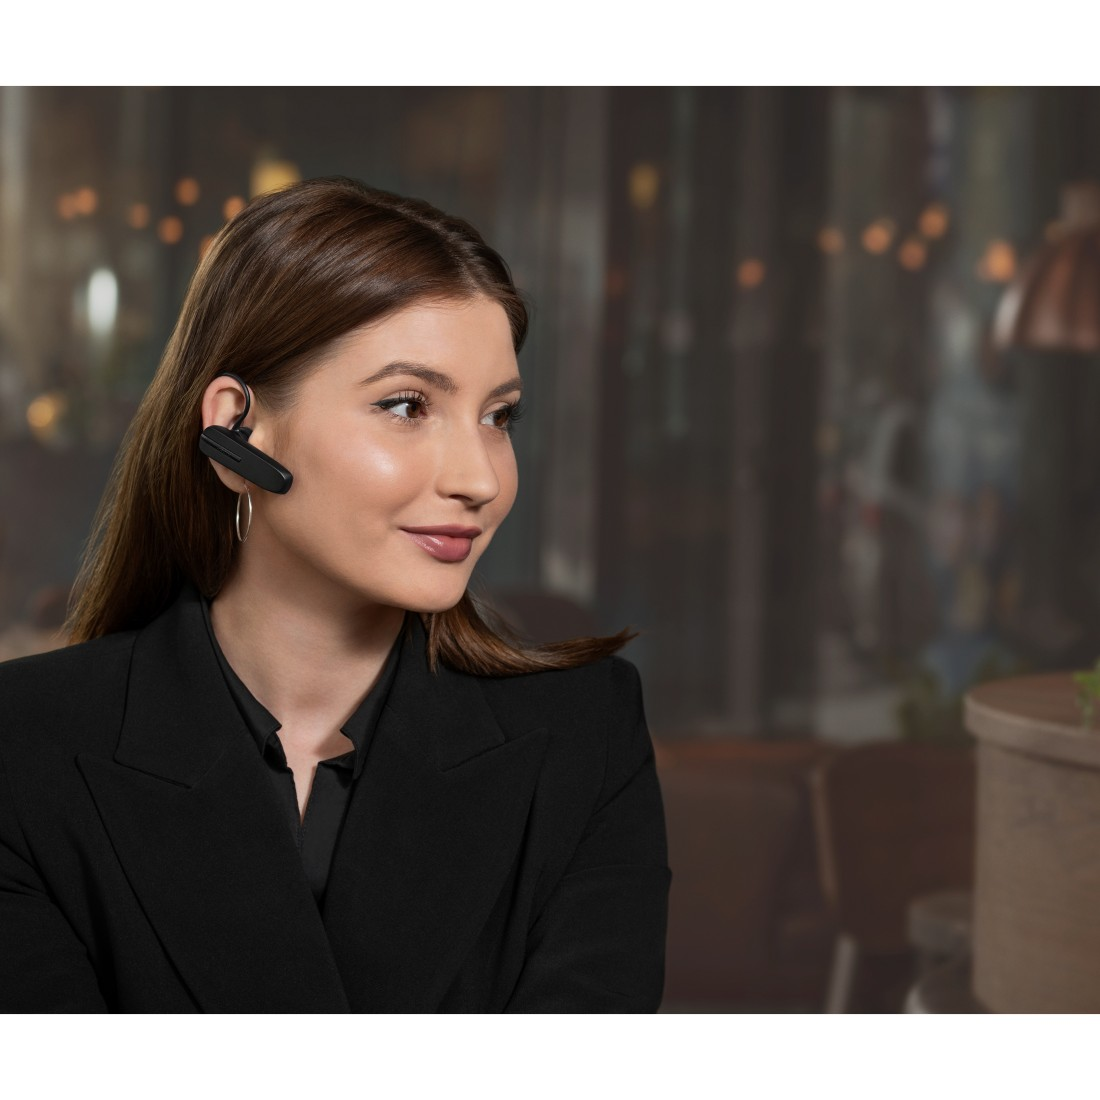 Bluetooth 5, Talk JABRA In-ear Schwarz Headset